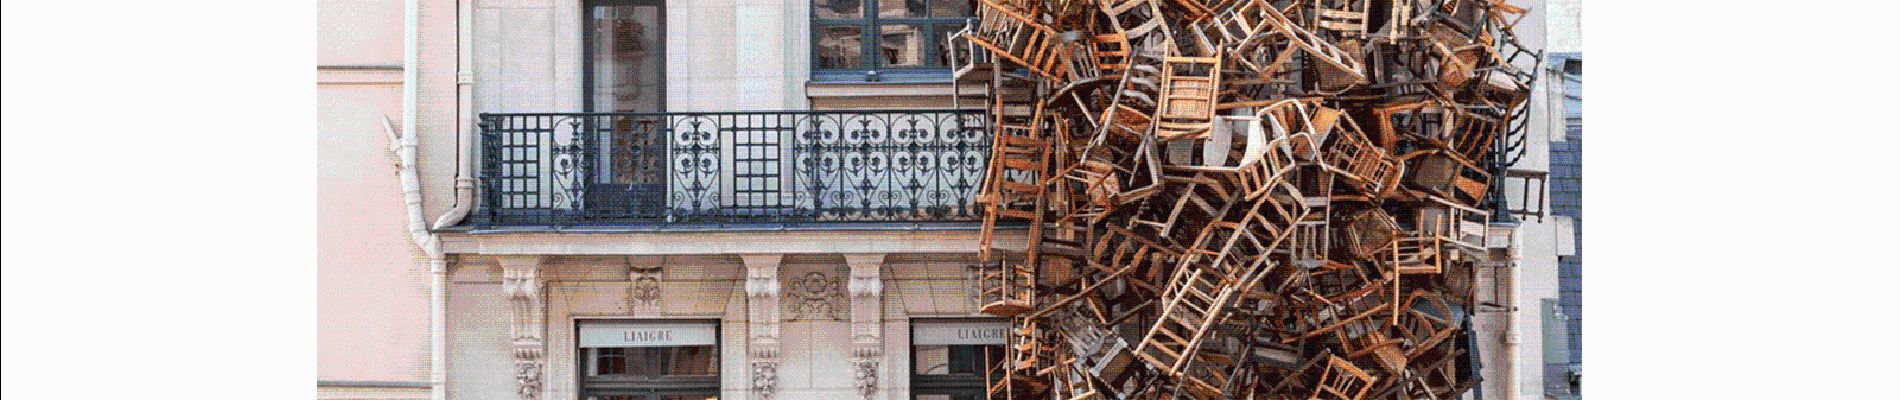 Punto de interés París - exposition temporaire chaises aux fenetres - Photo